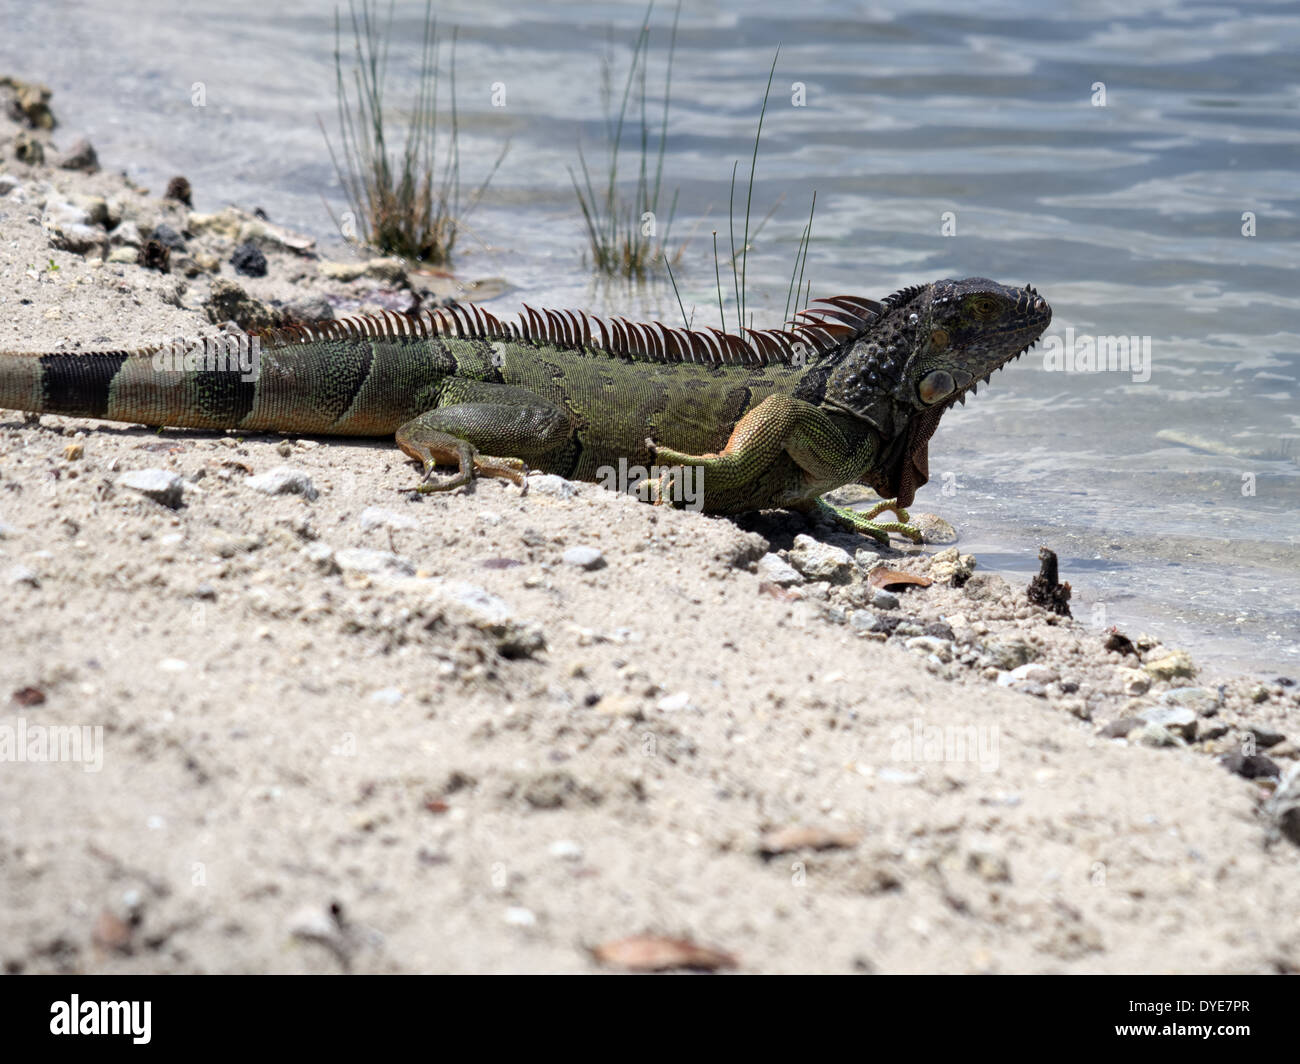 Iguane vert sur son chemin dans un lac. Banque D'Images